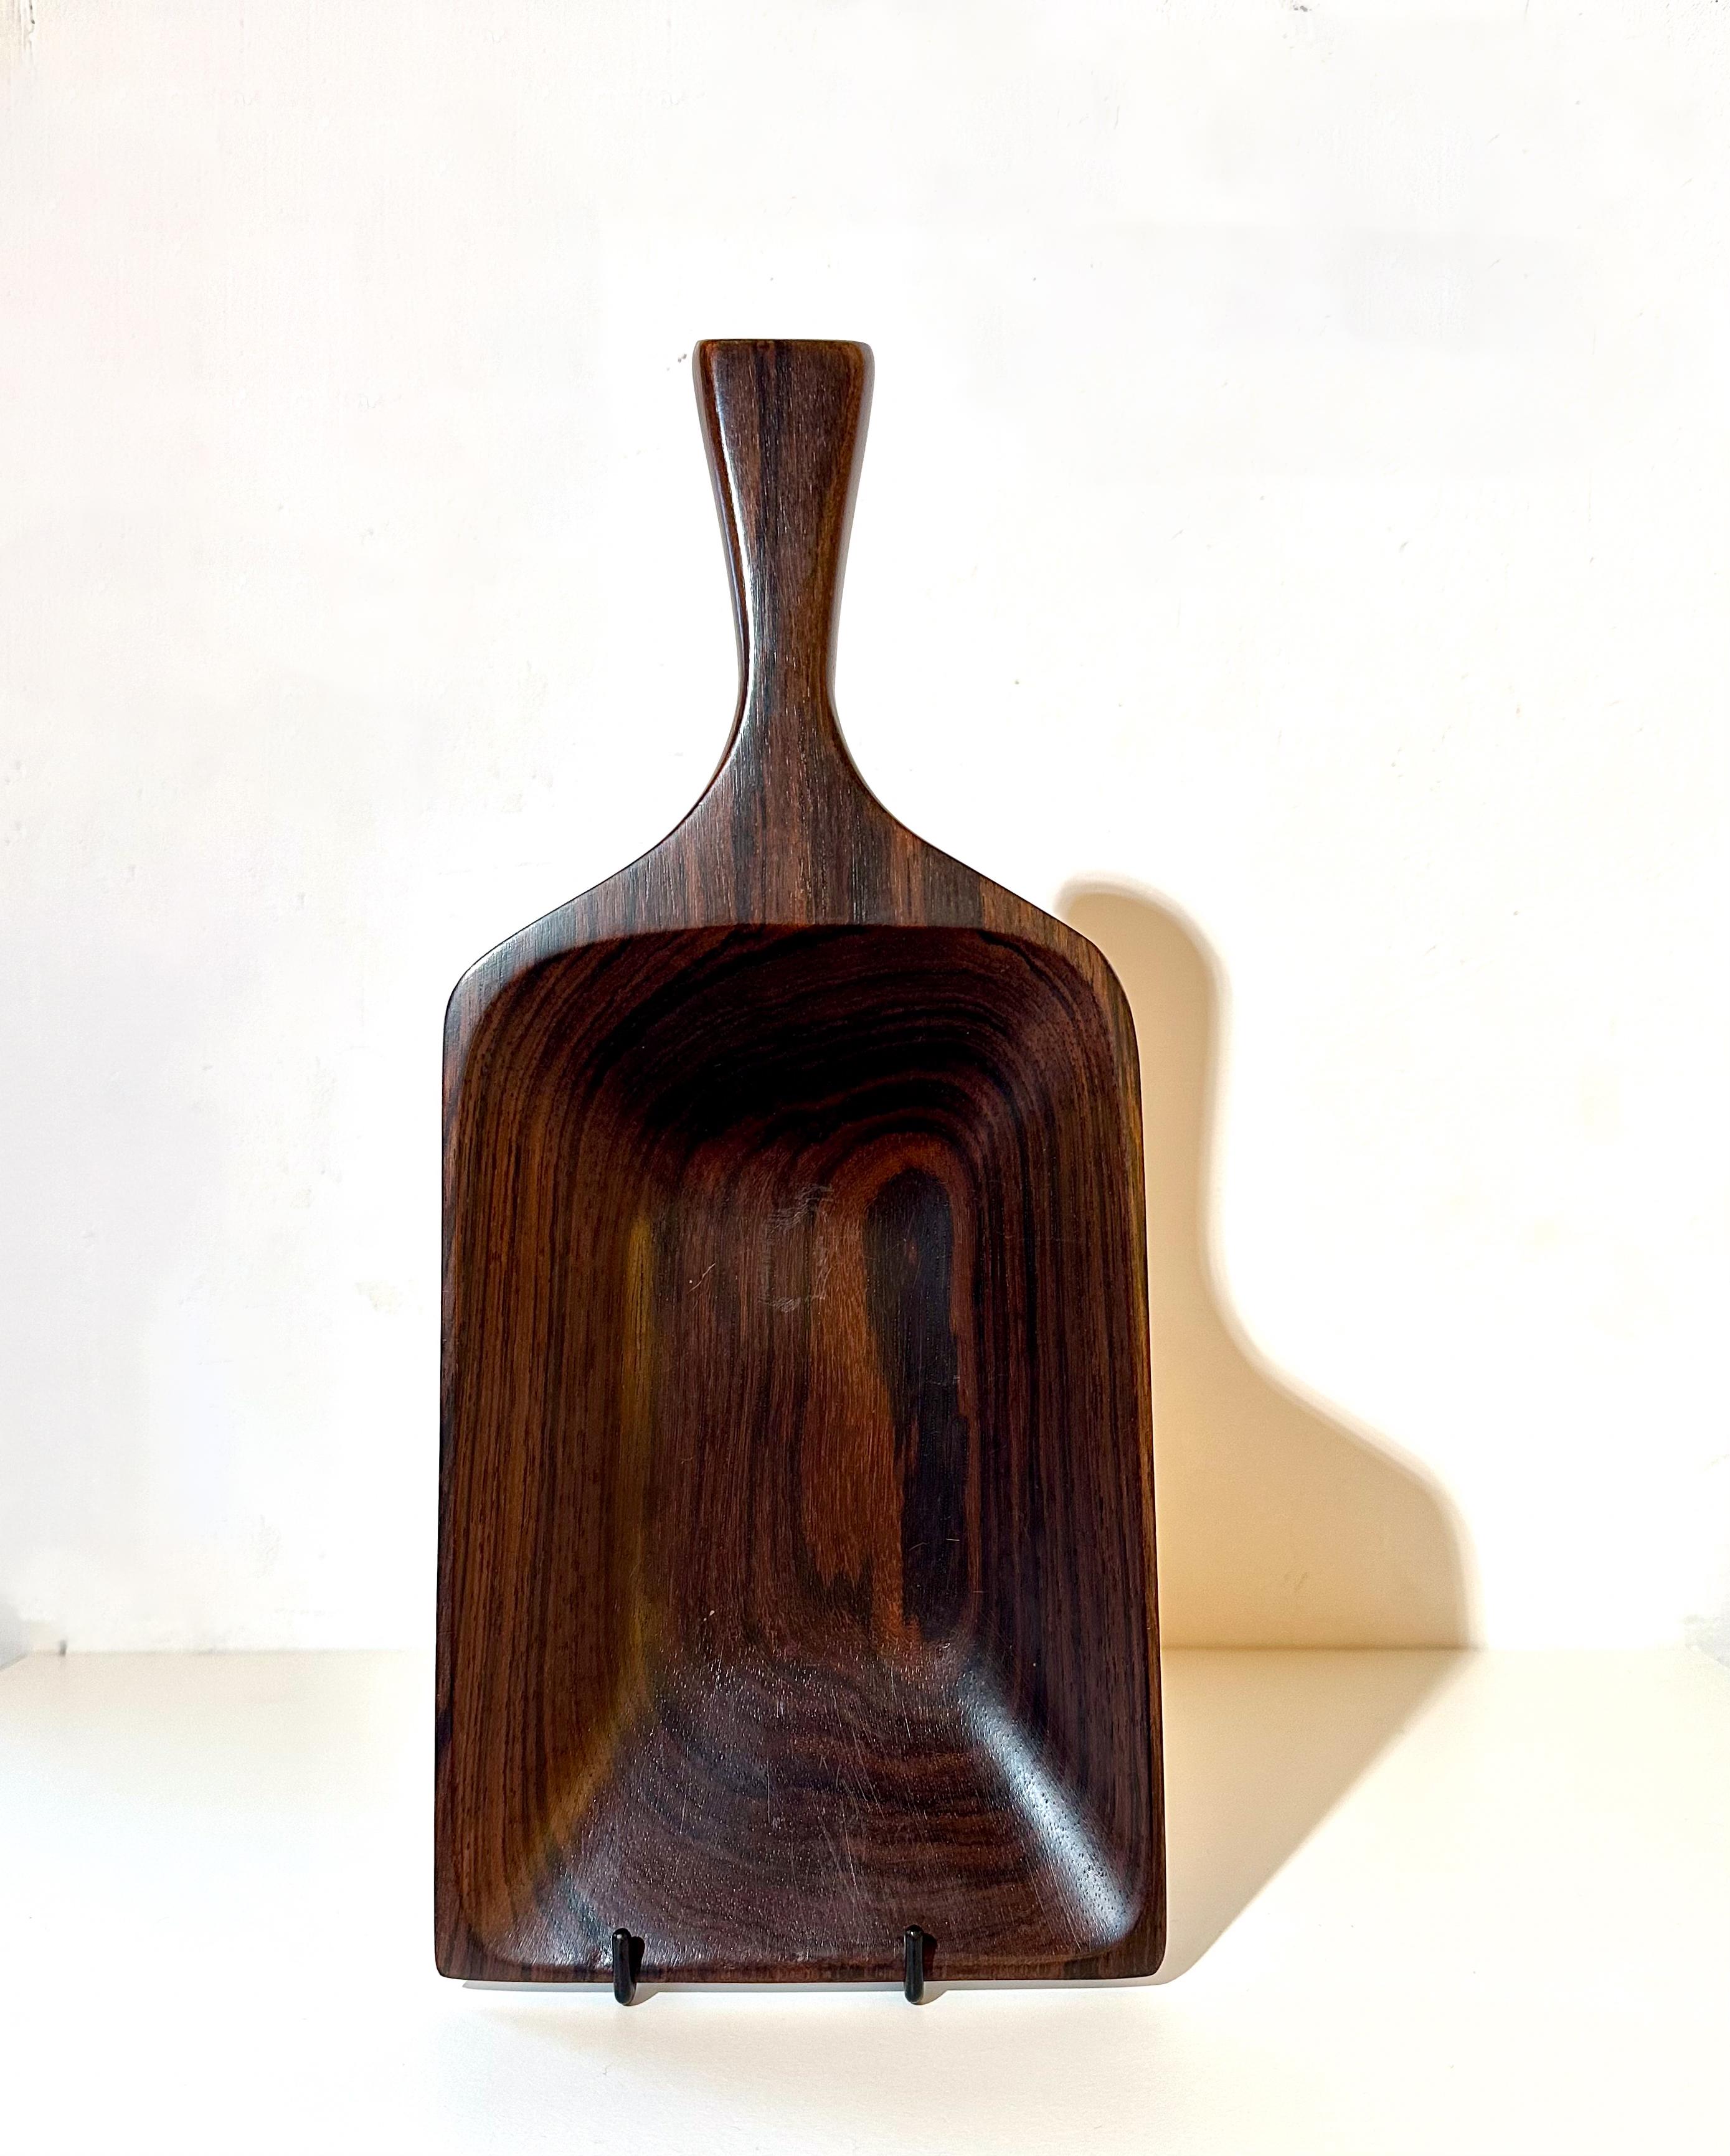 Jean Gillon
Modell 109. ca. 1960
Das Tragen des Wood Art Labels
MATERIAL: Massivholz
Abmessungen: 35 x 14,5 x 4 cm

Dieses außergewöhnliche Tablett, das um 1960 von Jean Gillon entworfen wurde, zeichnet sich durch seine elegante, an eine Schaufel